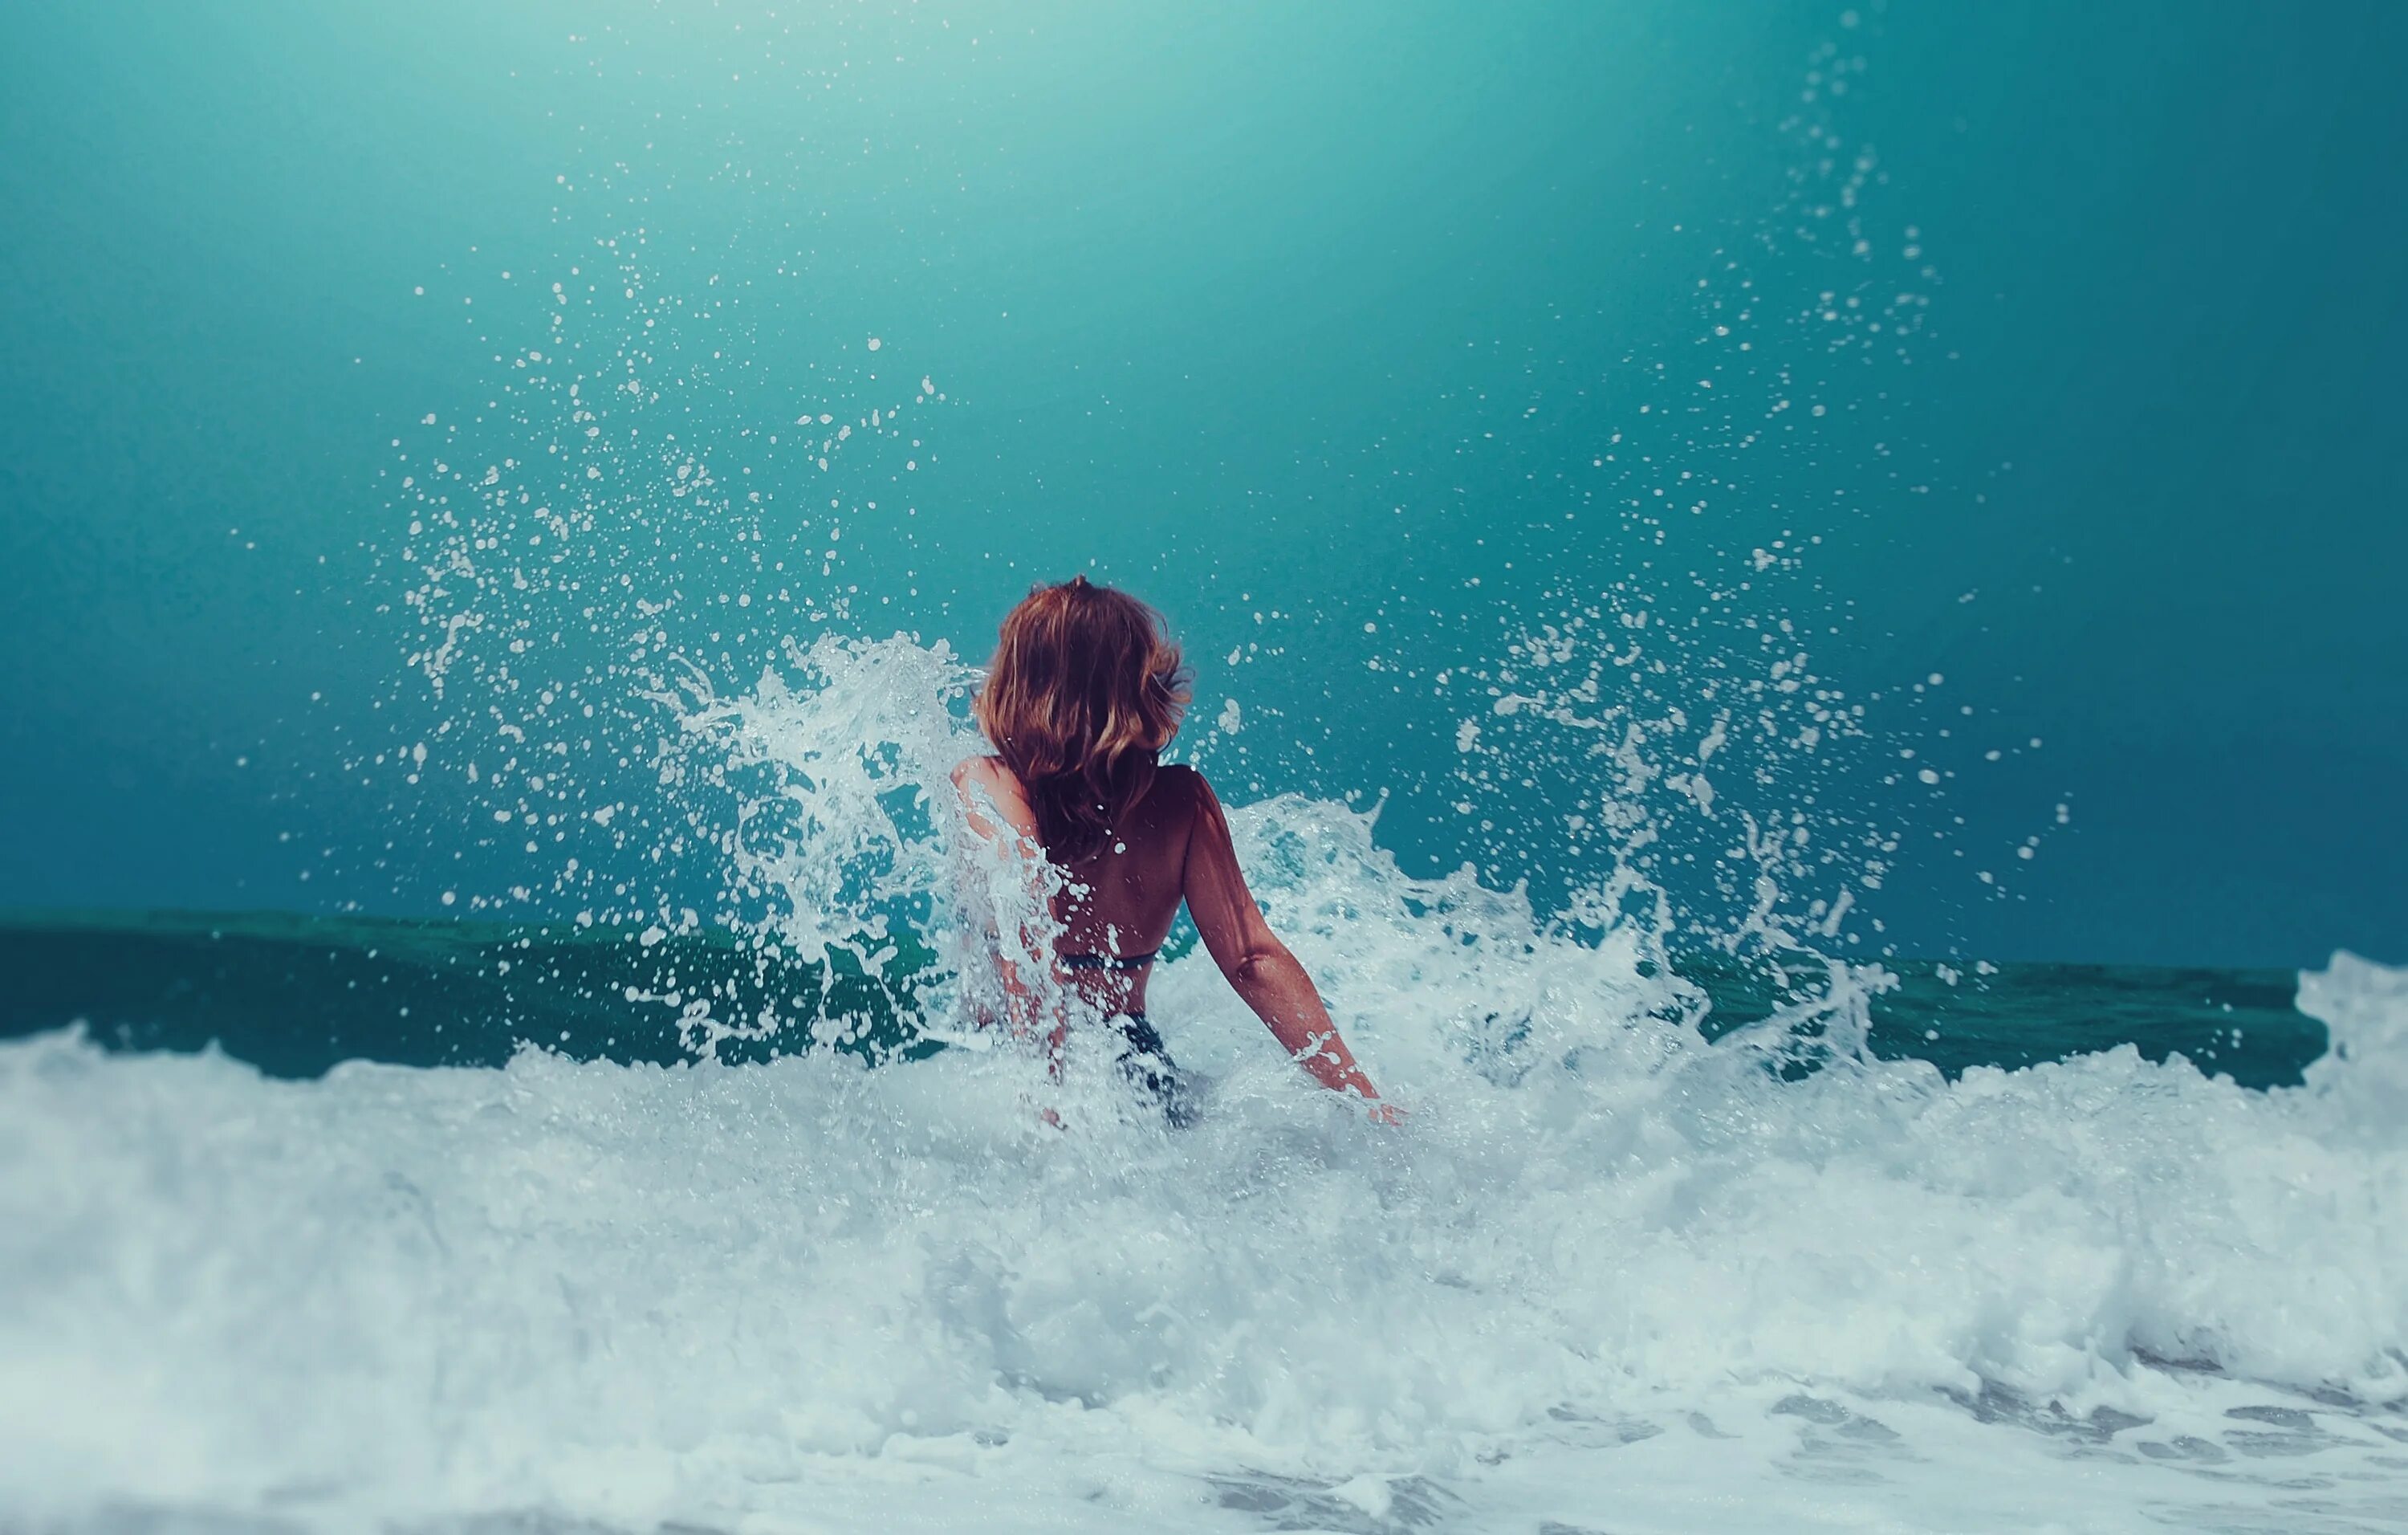 Море восторг. Девушка-море. Девушка в волнах моря. Девушка на волне. Девушка в брызгах воды.